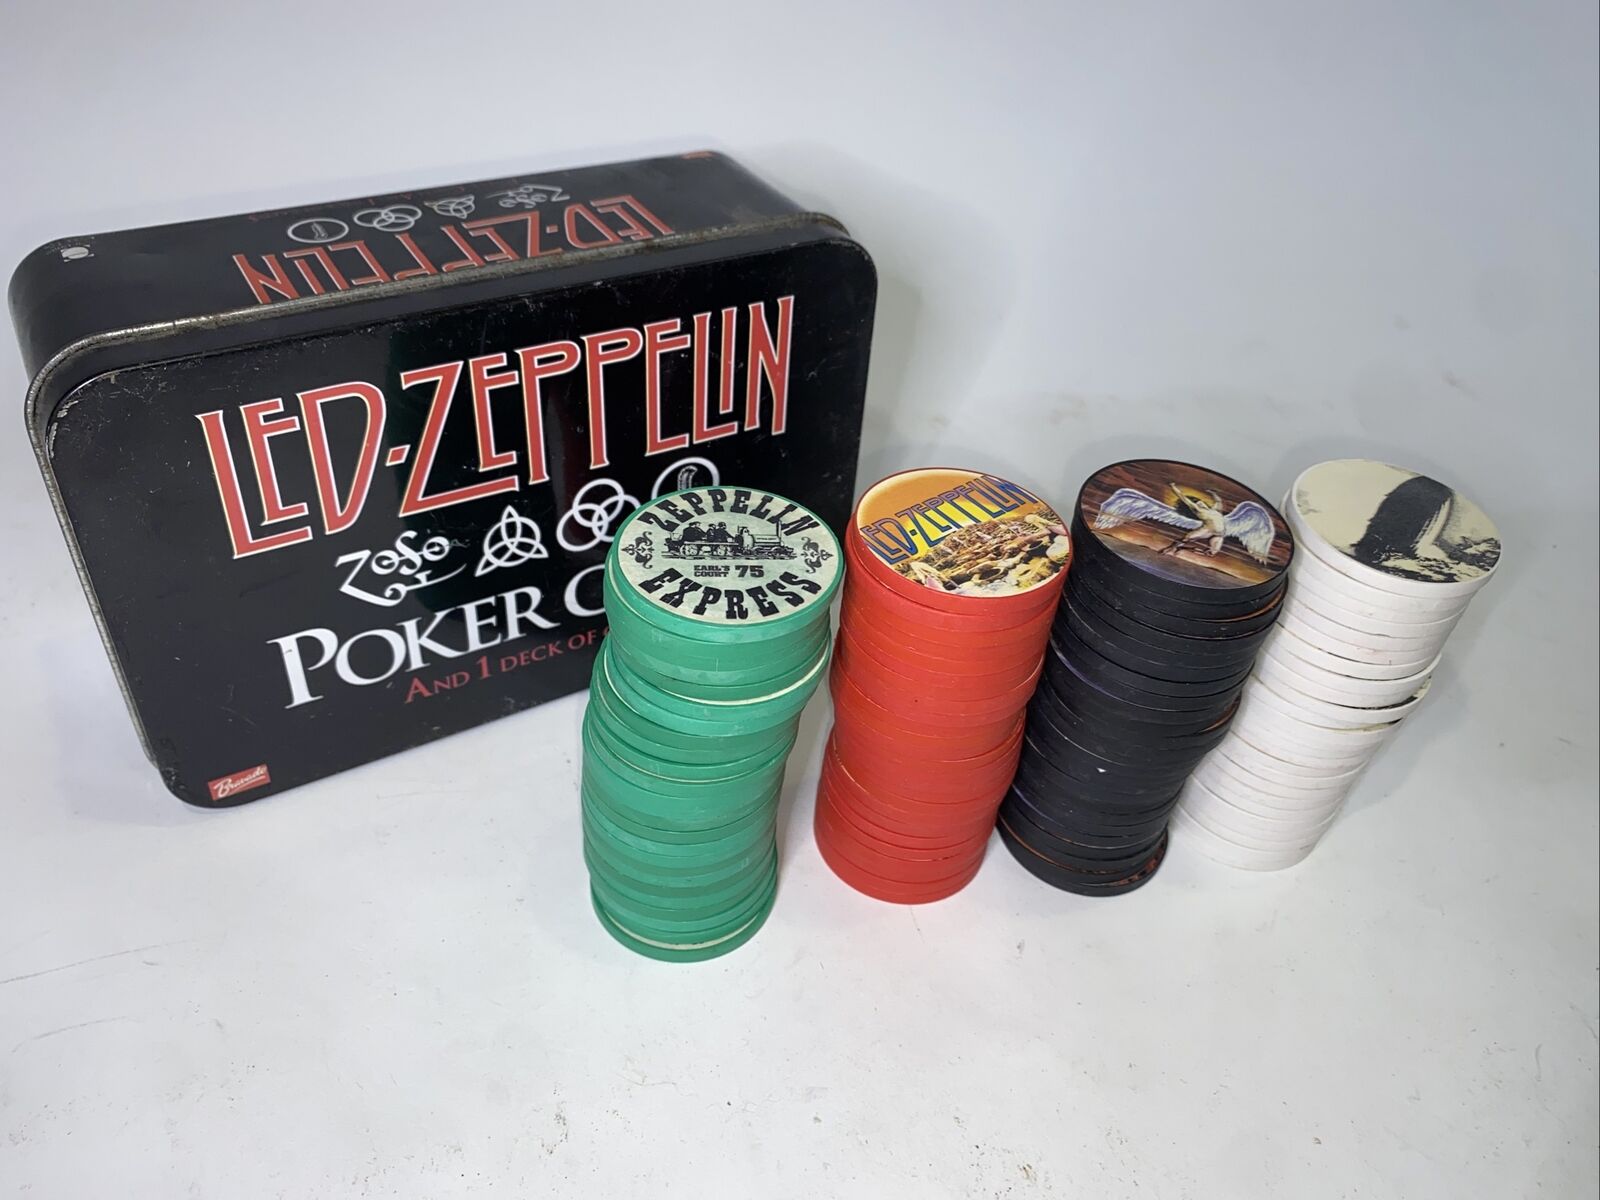 Led Zeppelin Poker Chips Only